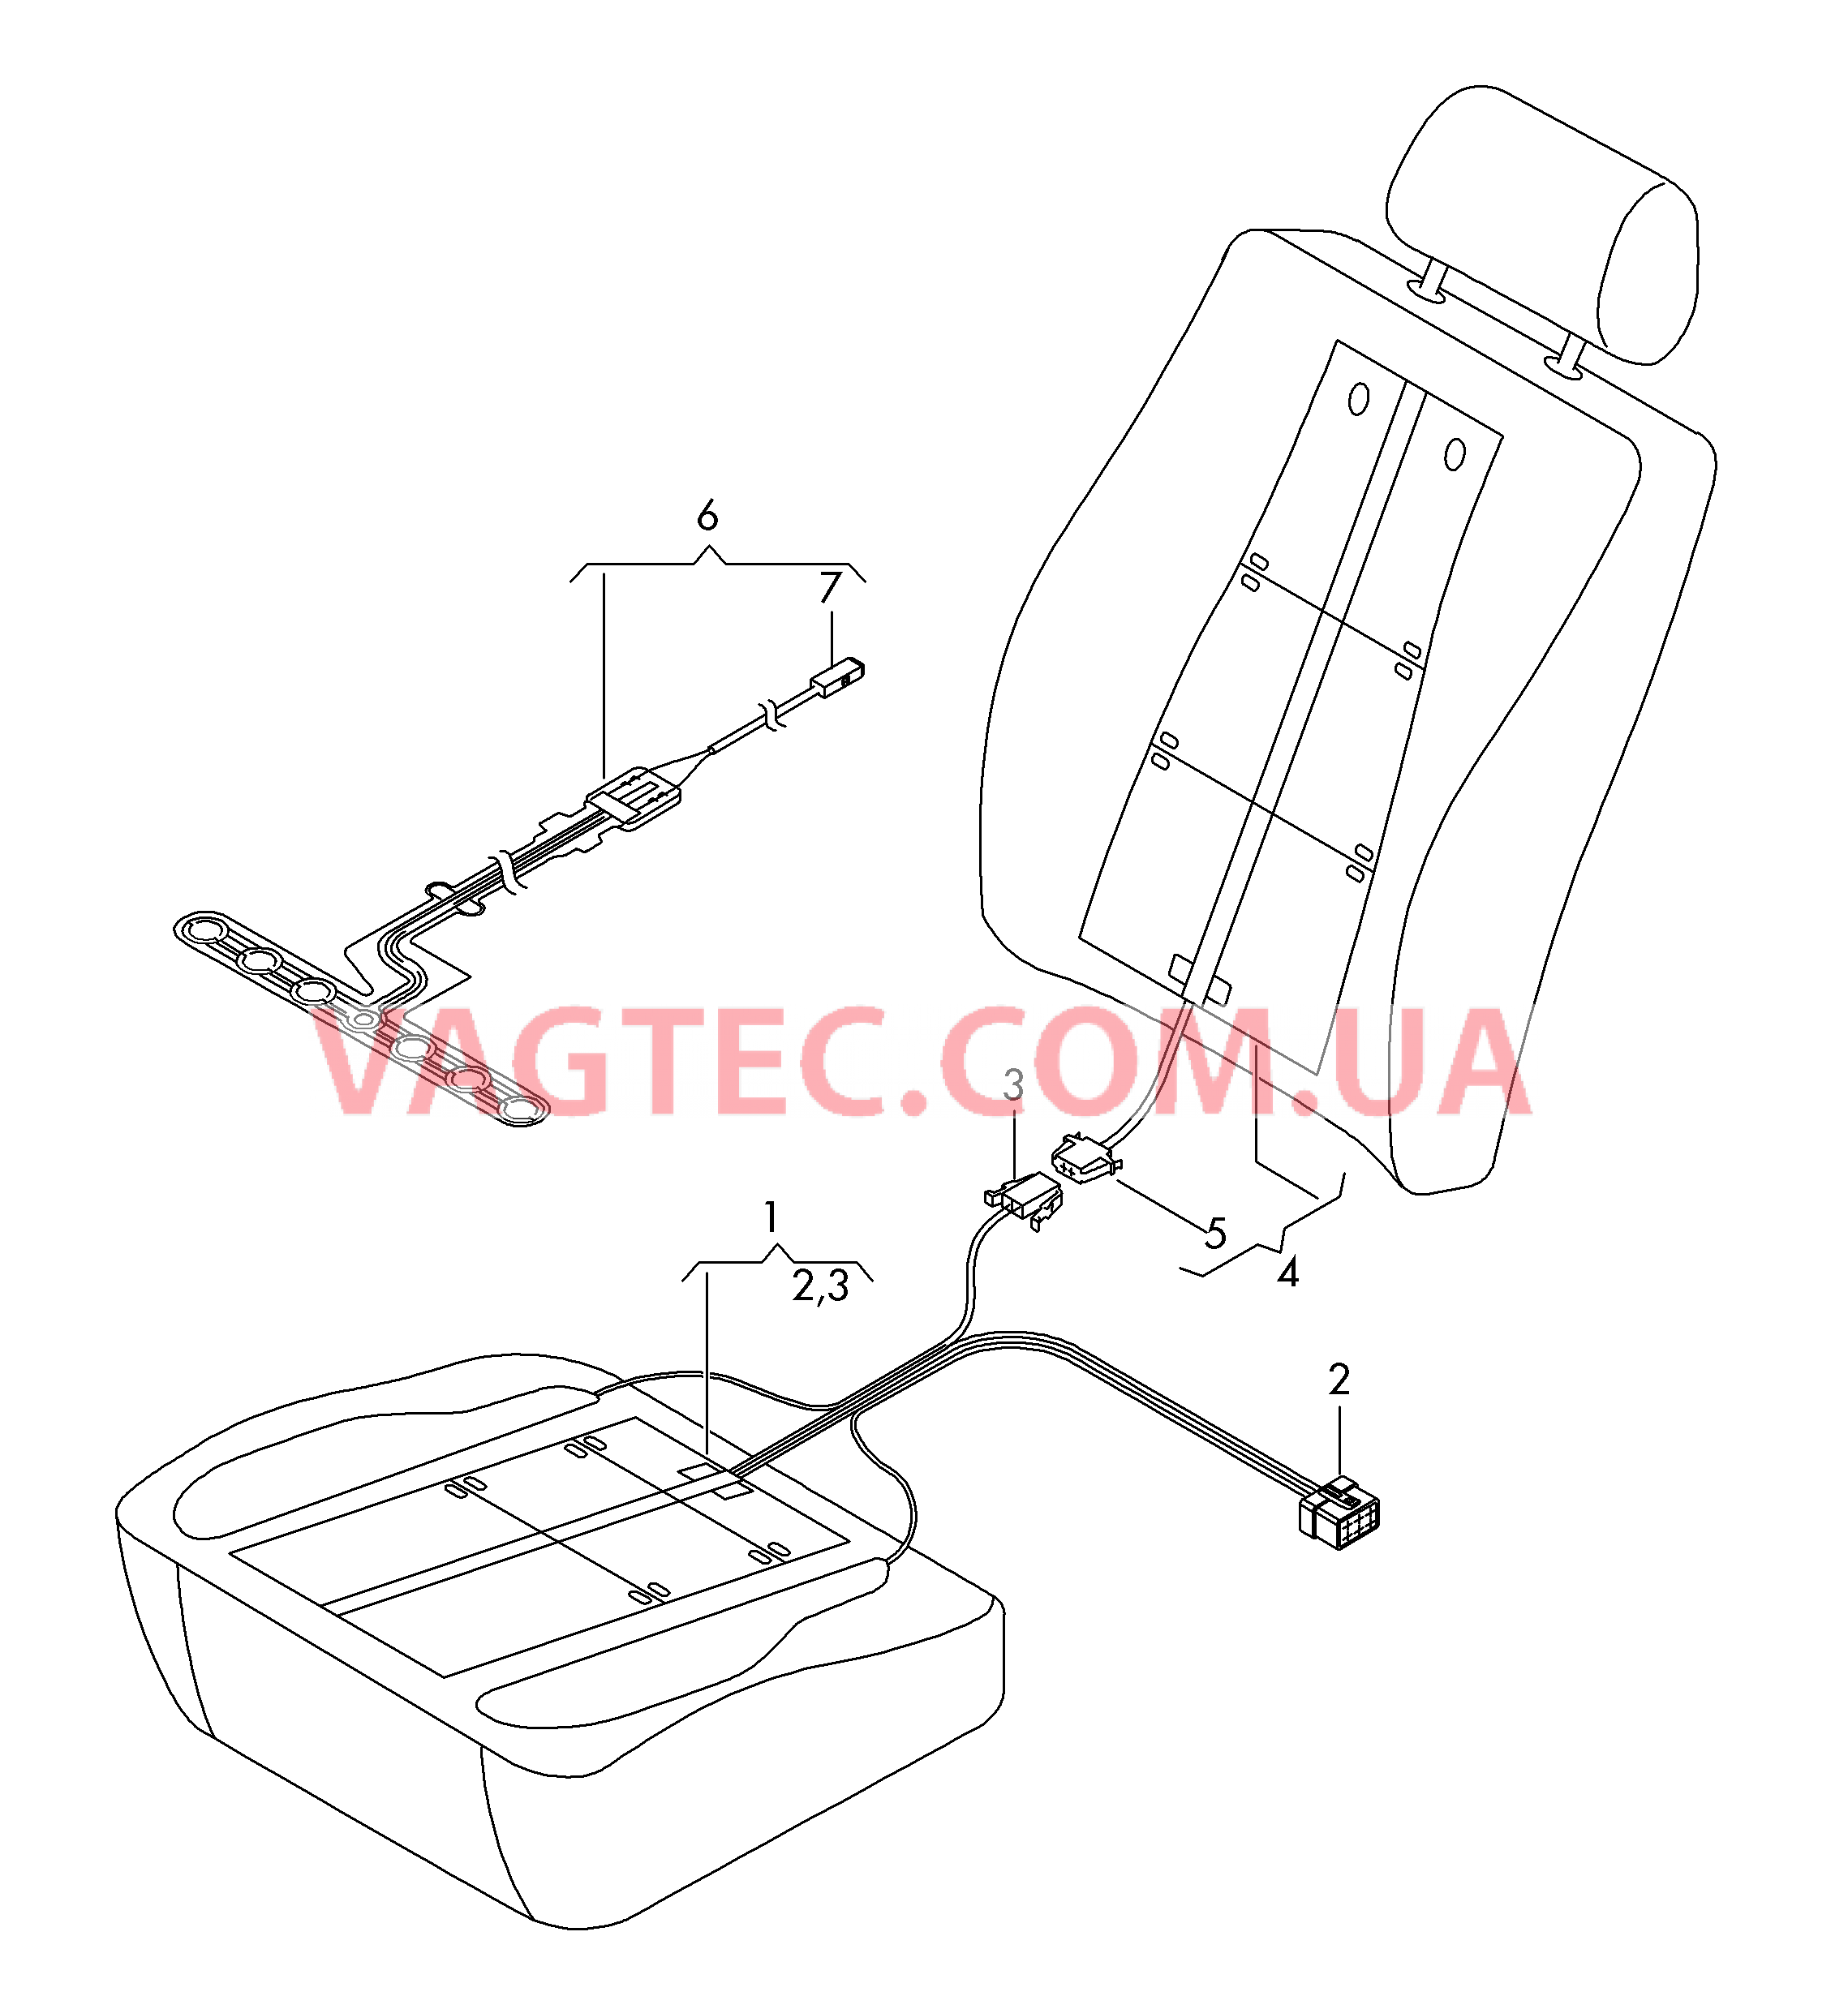 Нагревательный элемент спинки и подушки сиденья  Вставка распознавания занятости сиденья  для AUDI A3 2016